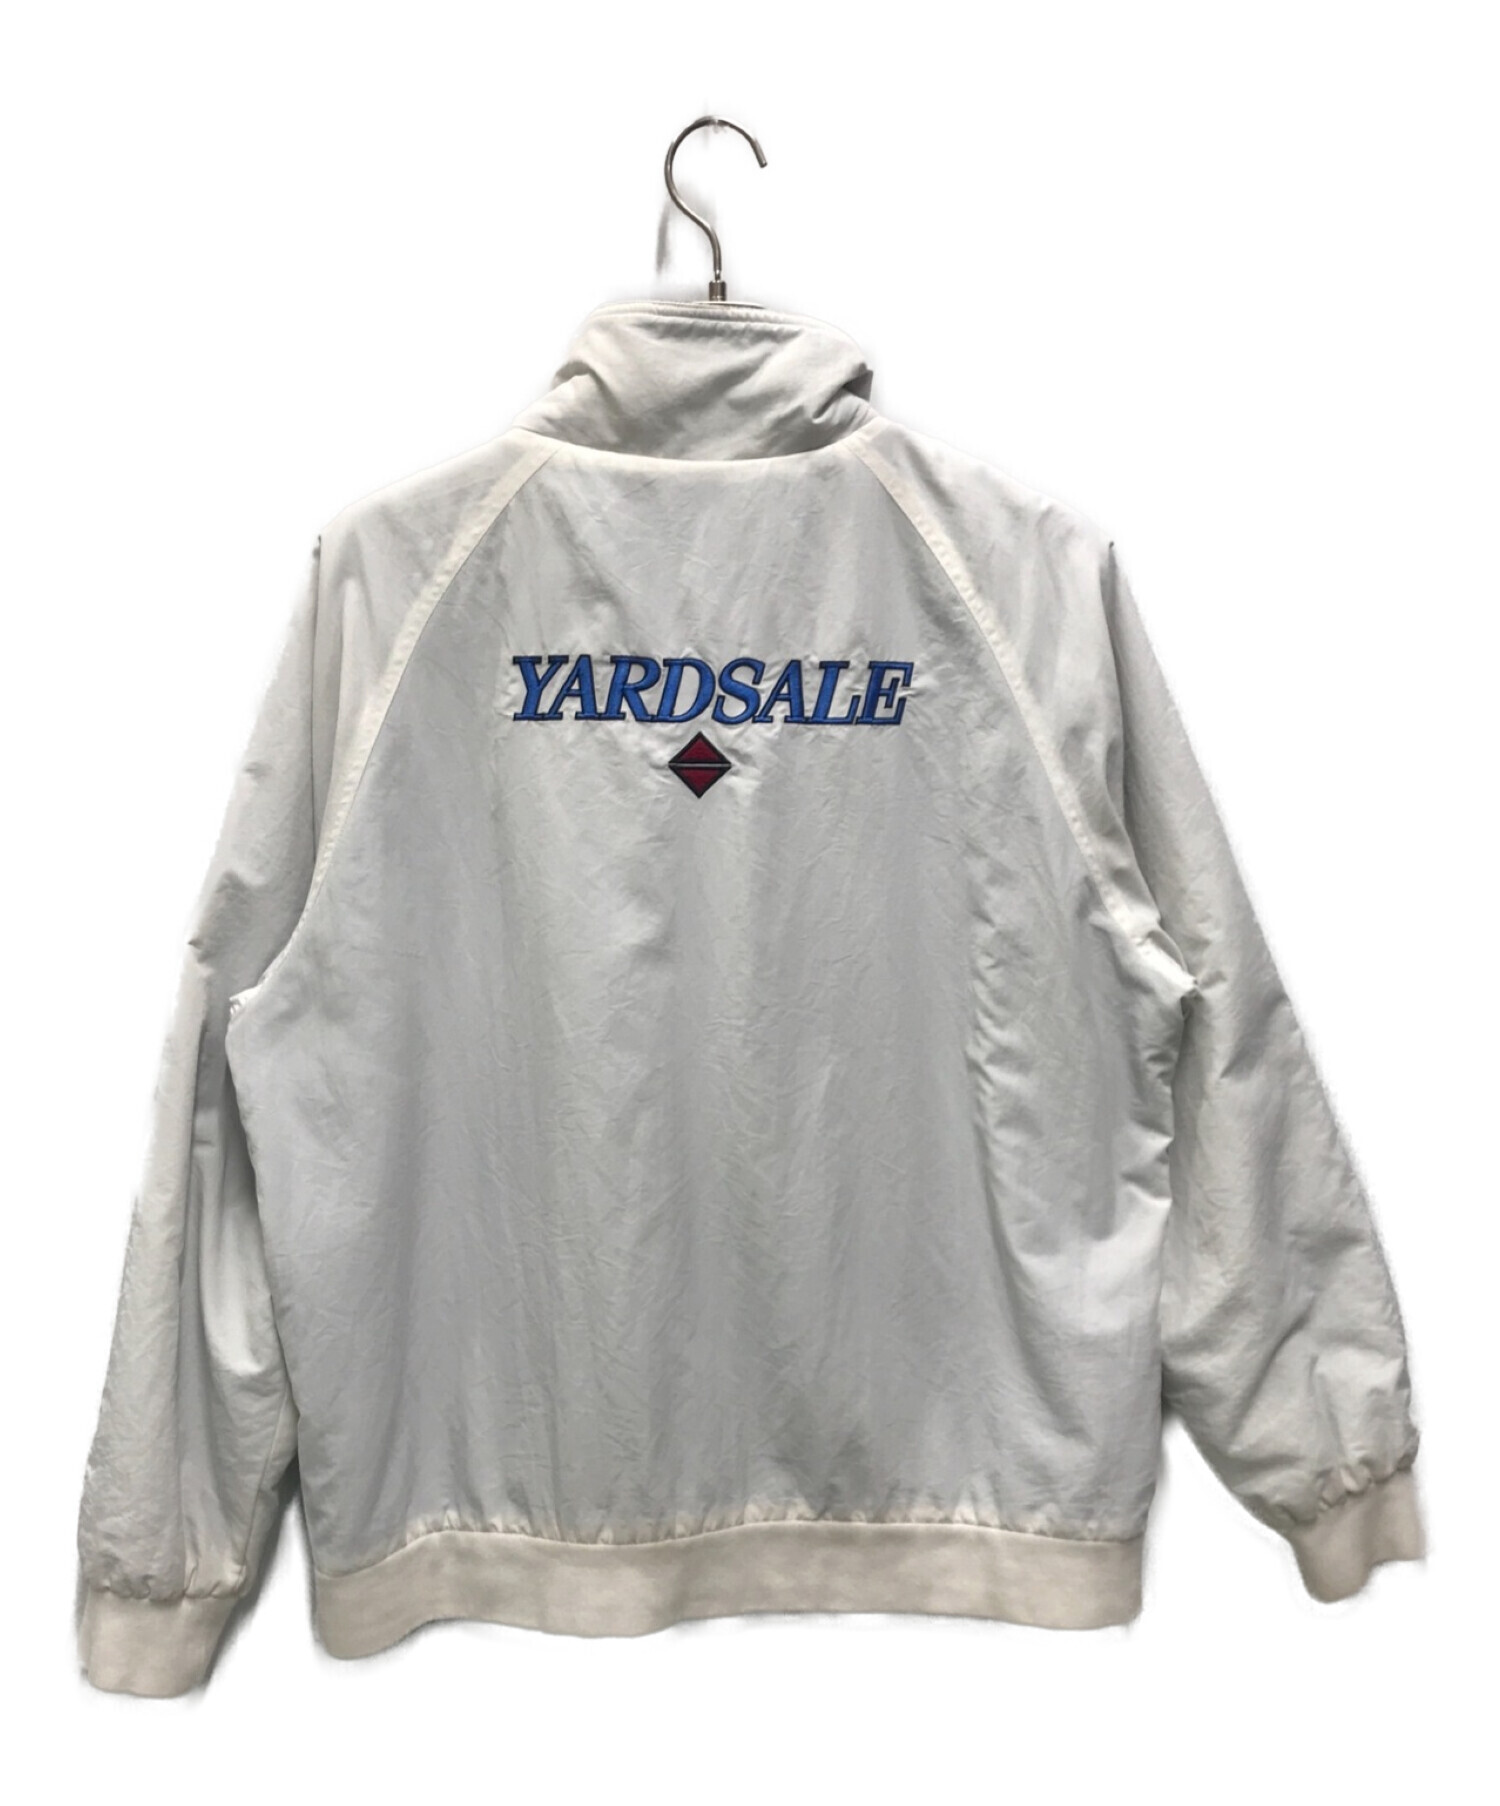 yardsale (ヤードセール) ジップジャケット ブルー×ホワイト サイズ:M